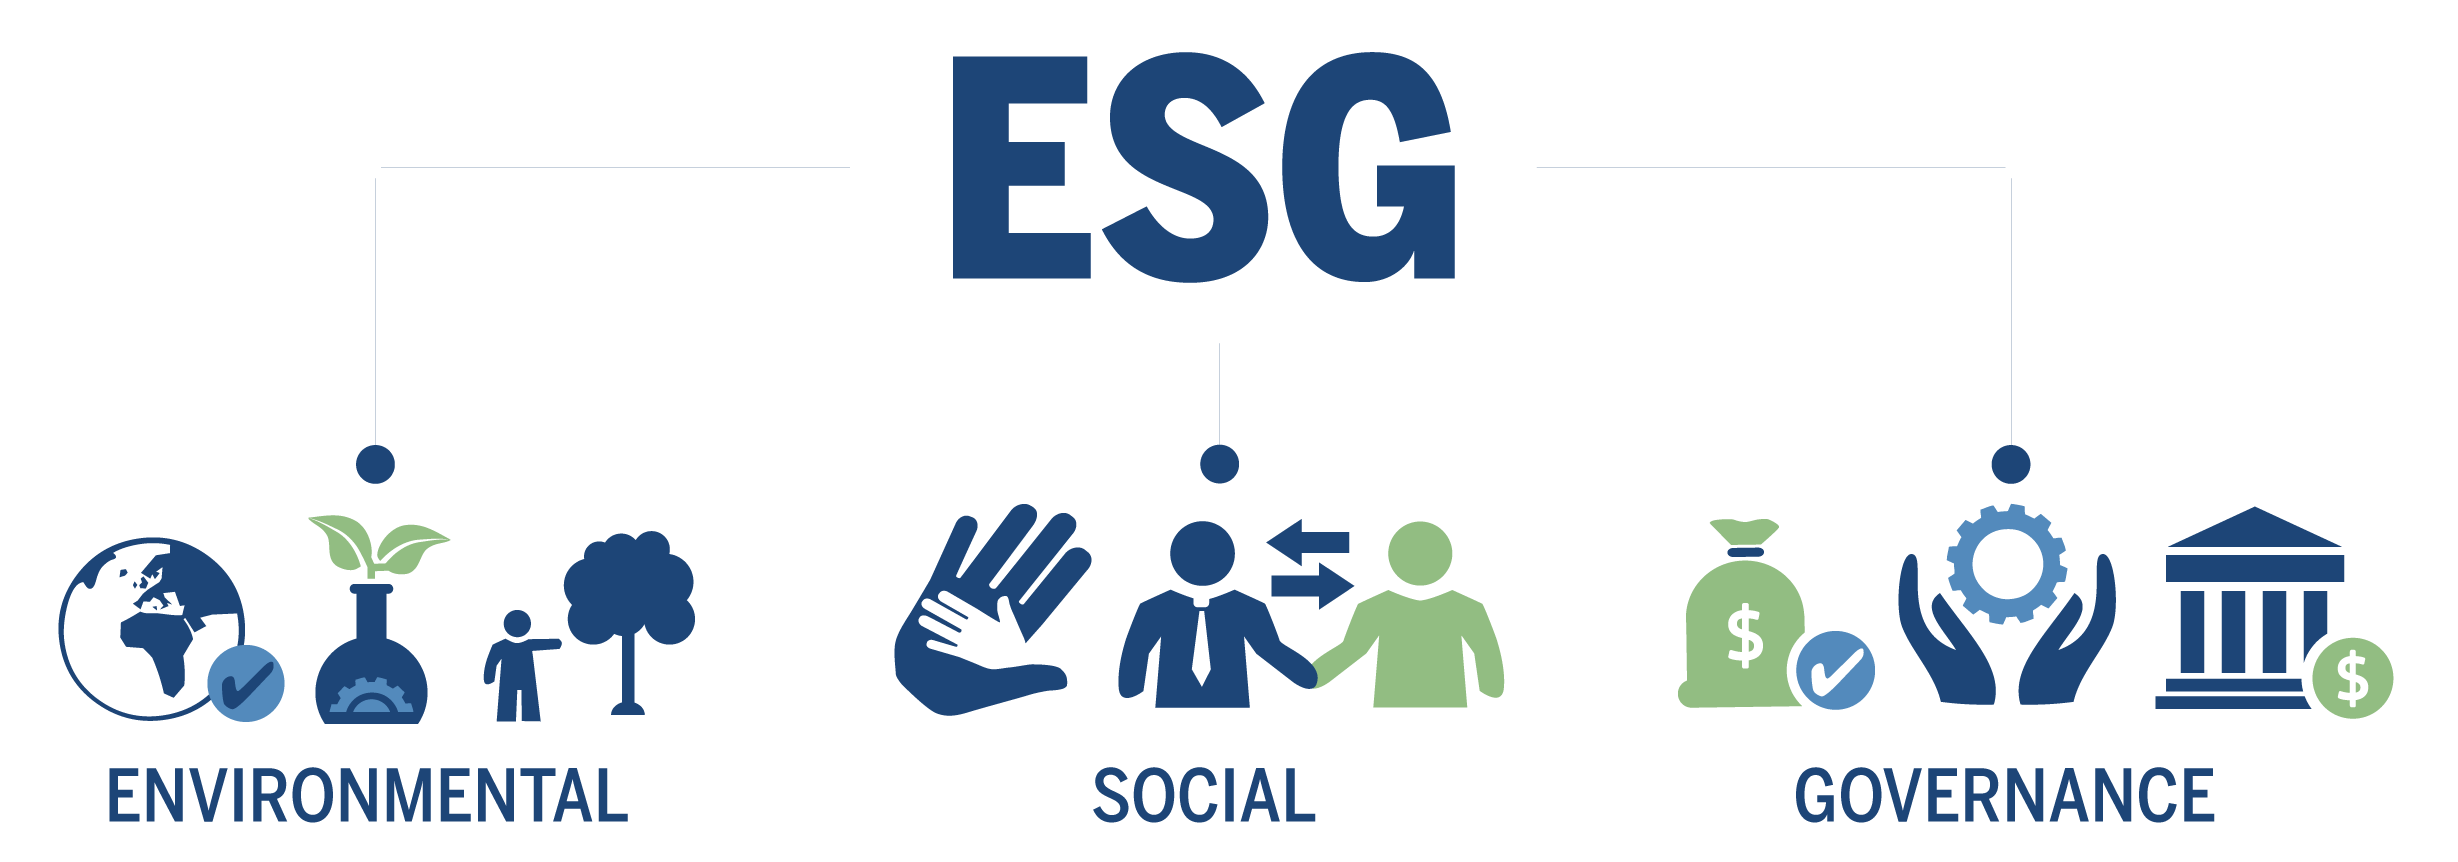 Esg-Graphic